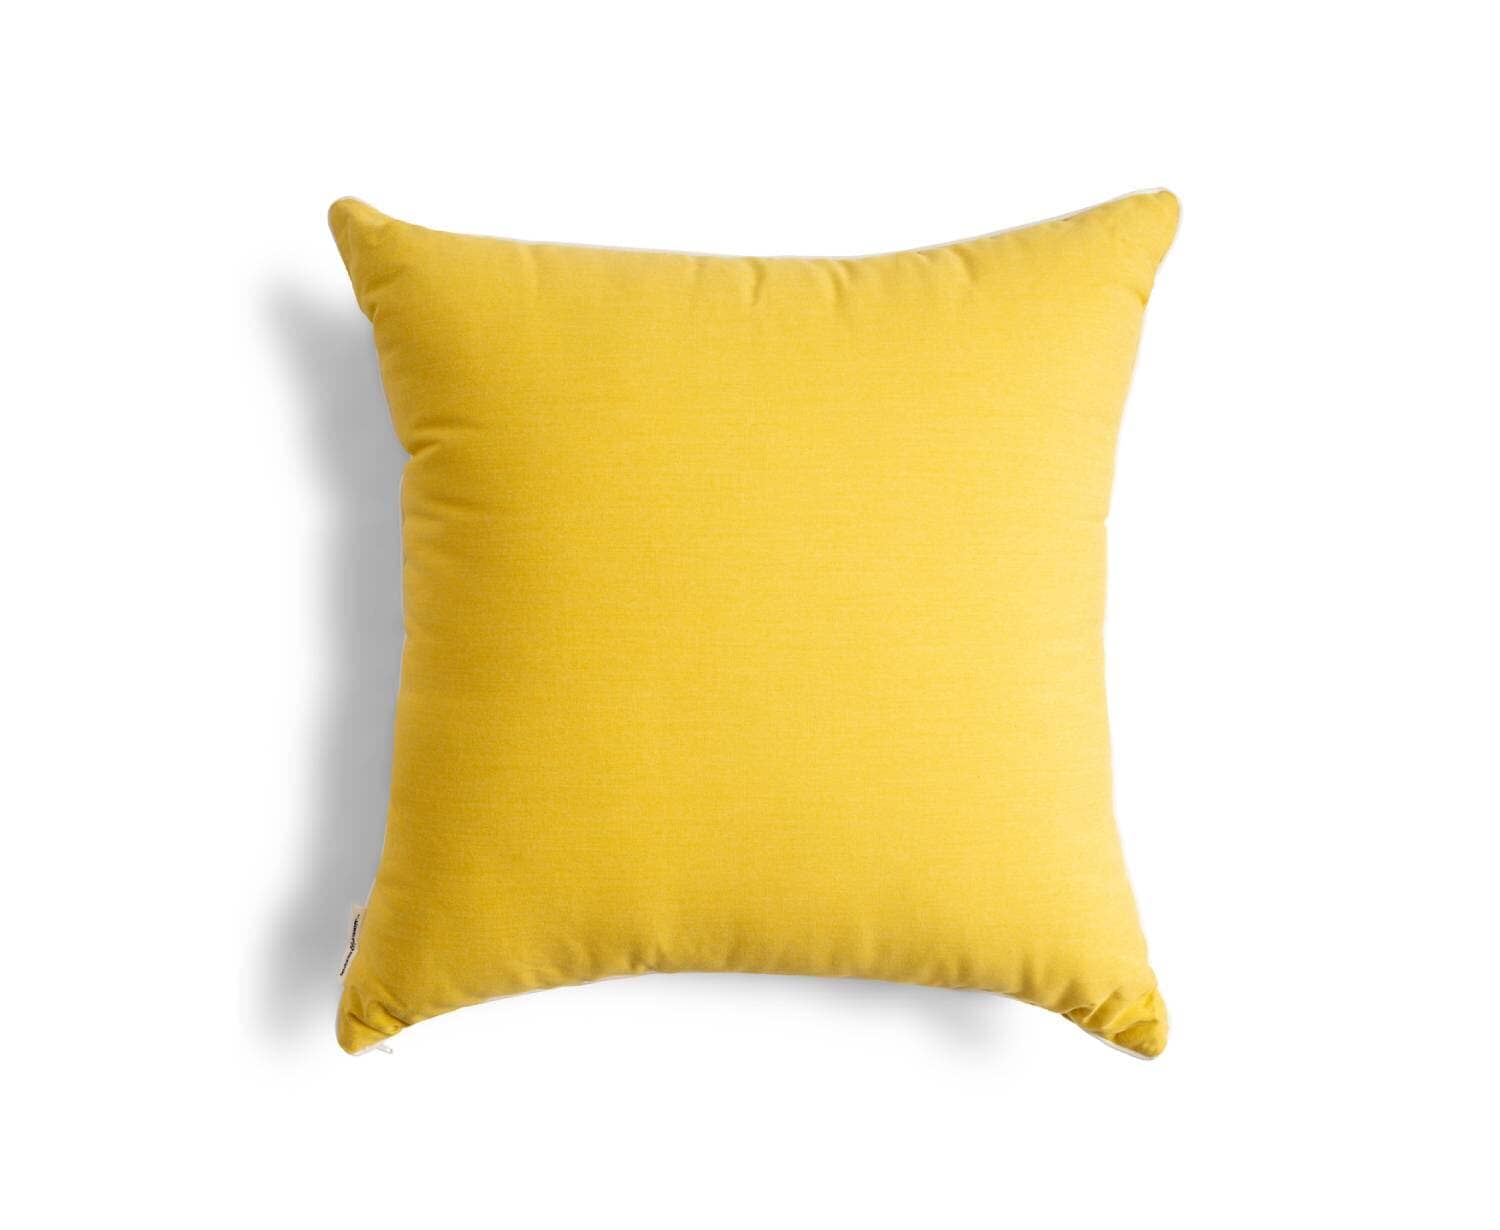 Studio image of riviera mimosa euro throw pillow